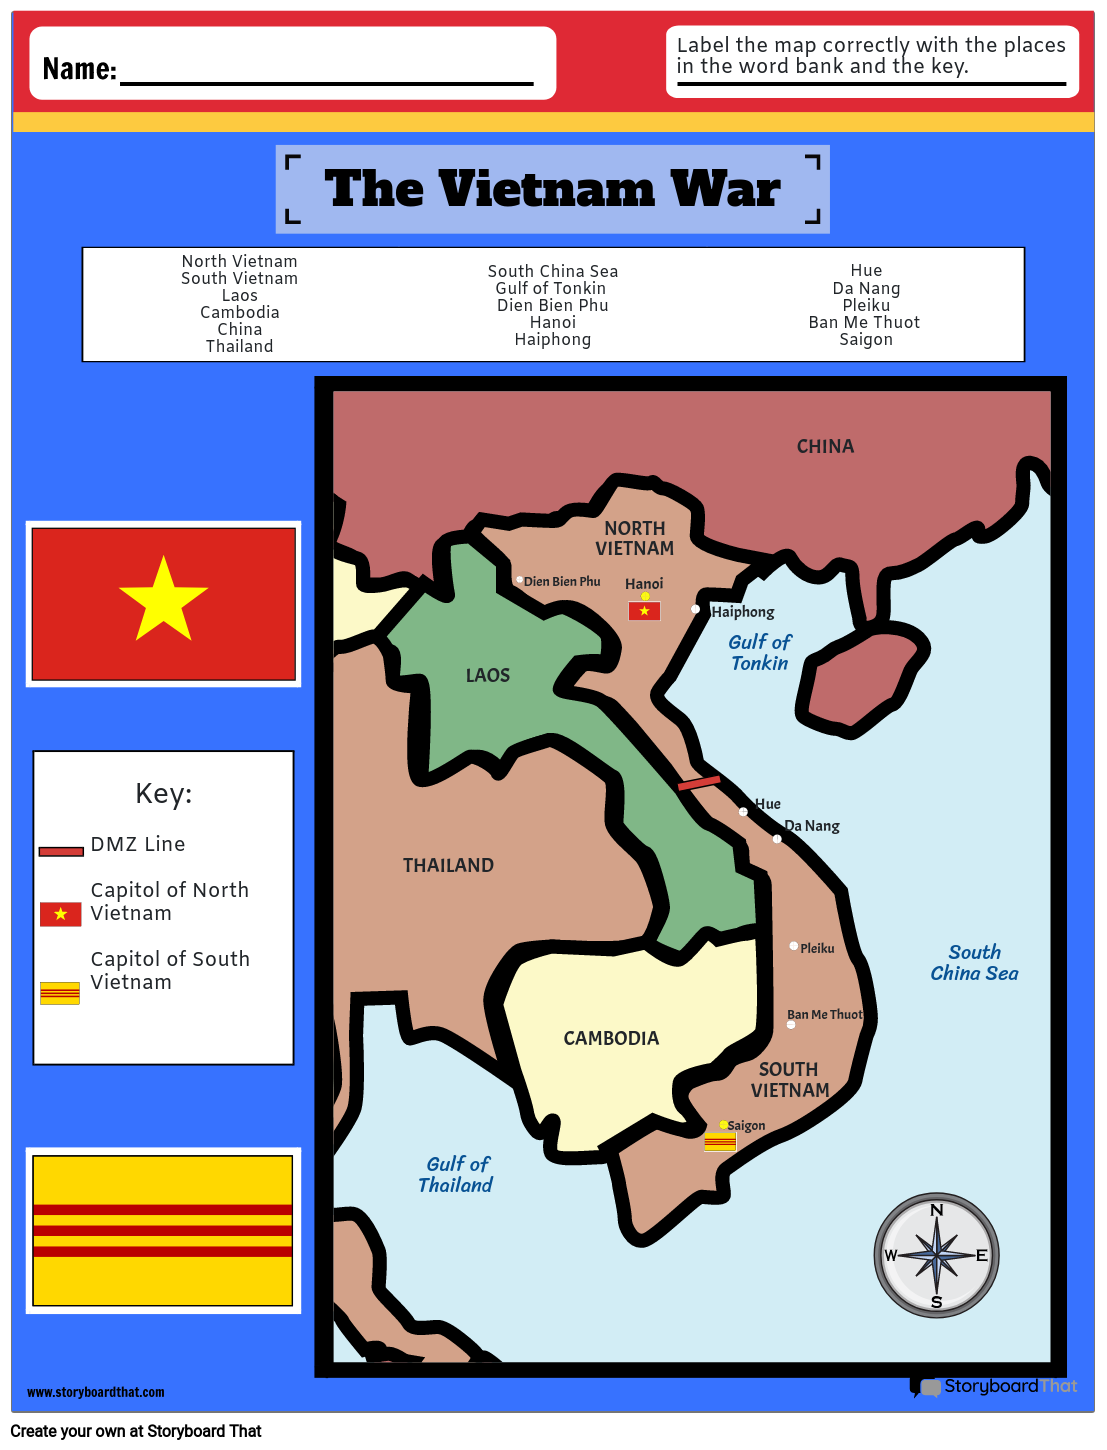 De Kaart van de Oorlog in Vietnam